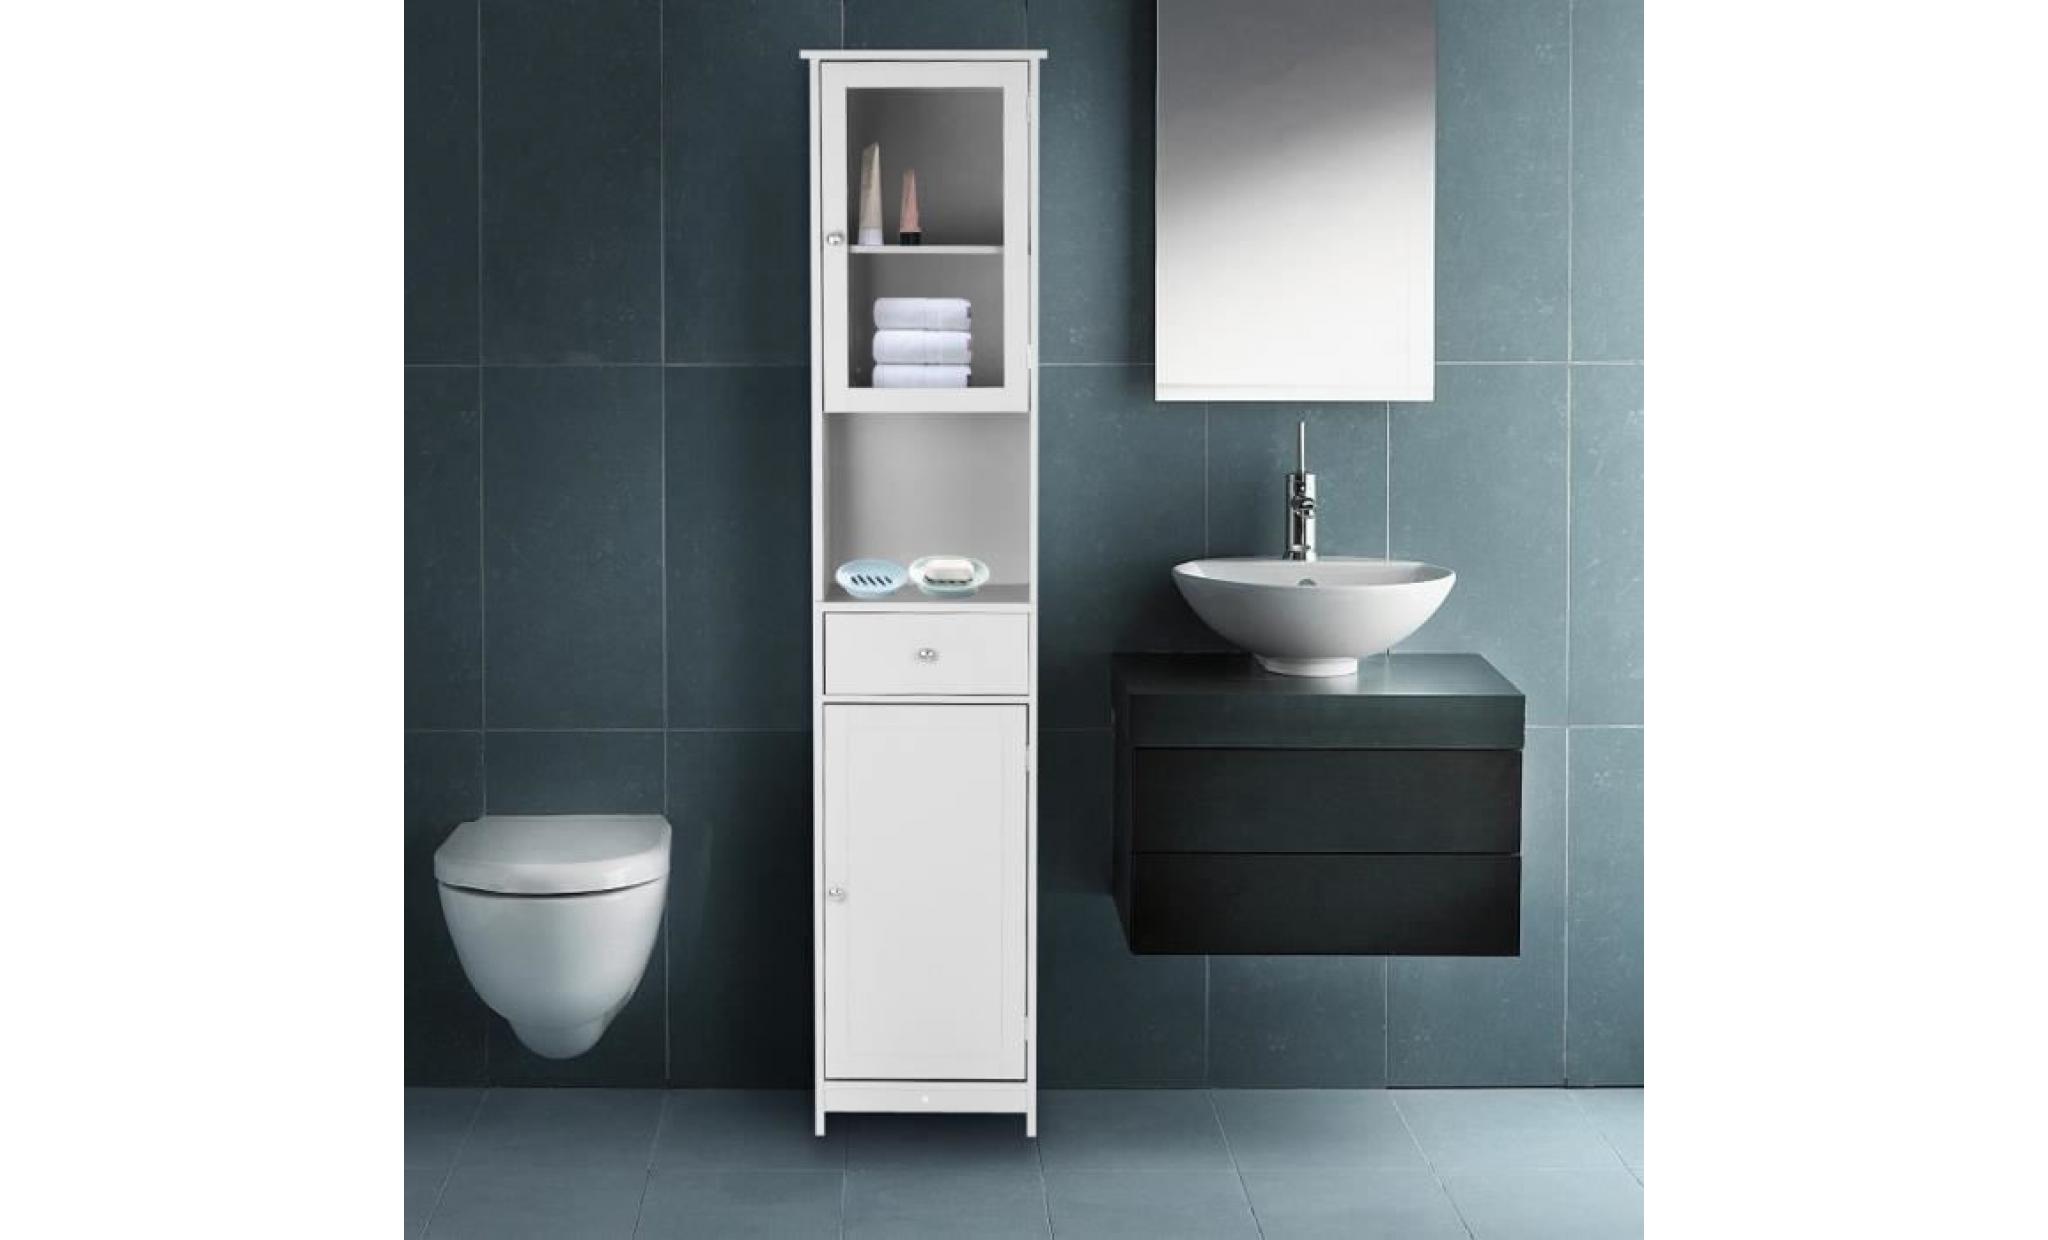 ikayaa armoire de rangement avec tiroir porte miroir cabinet haut meuble moderne pour cuisine salle de bains chambre 40 * 28 * 180cm